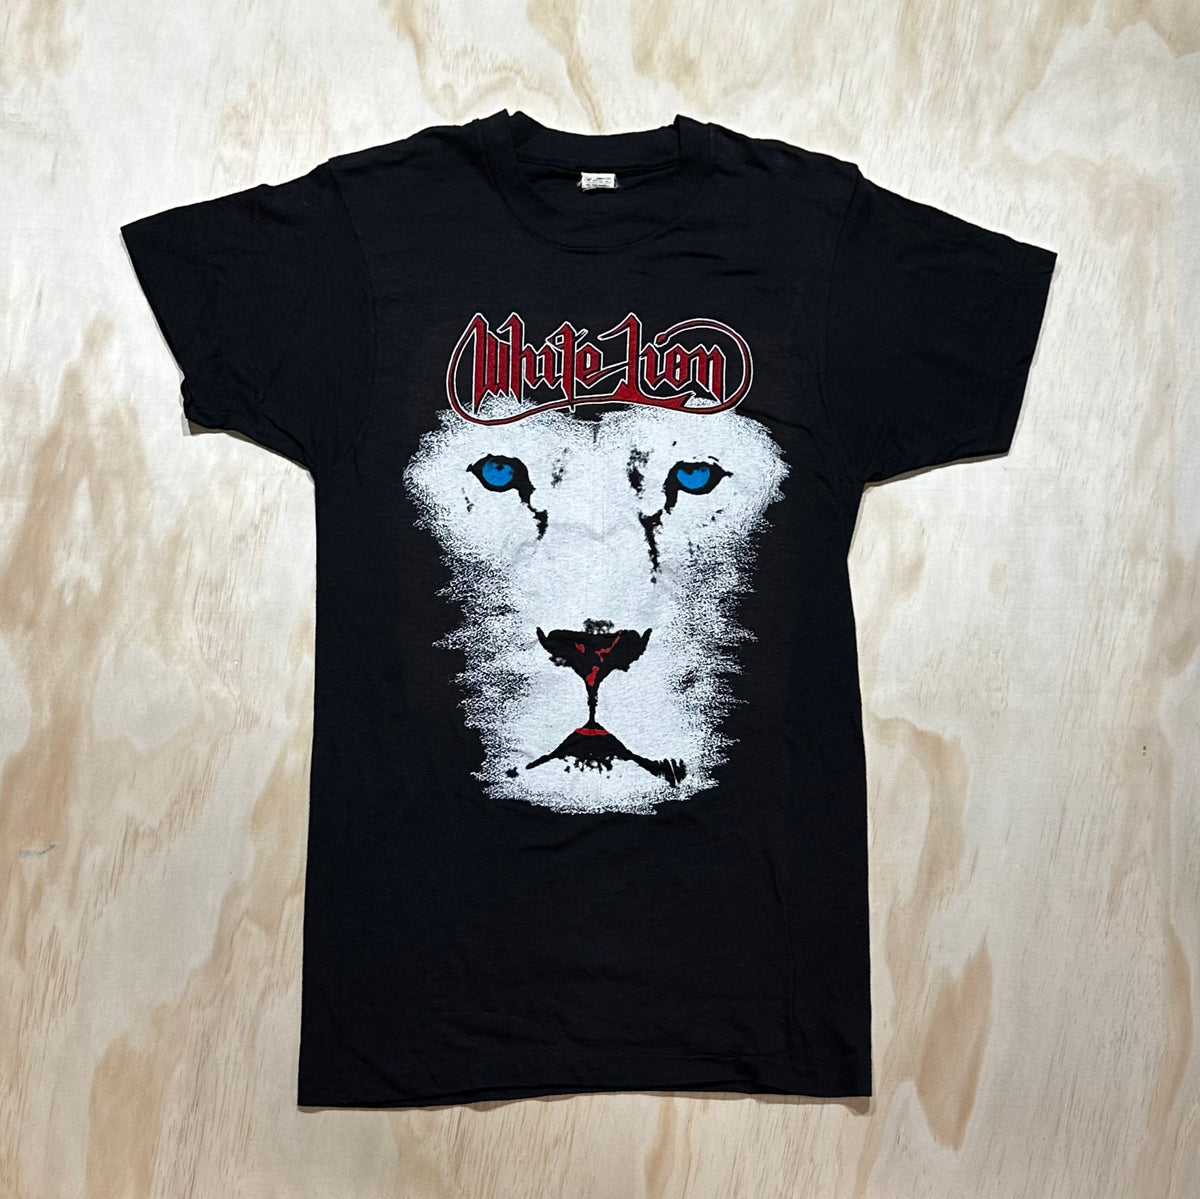 1988 Vintage White Lion Concert Tour shirt